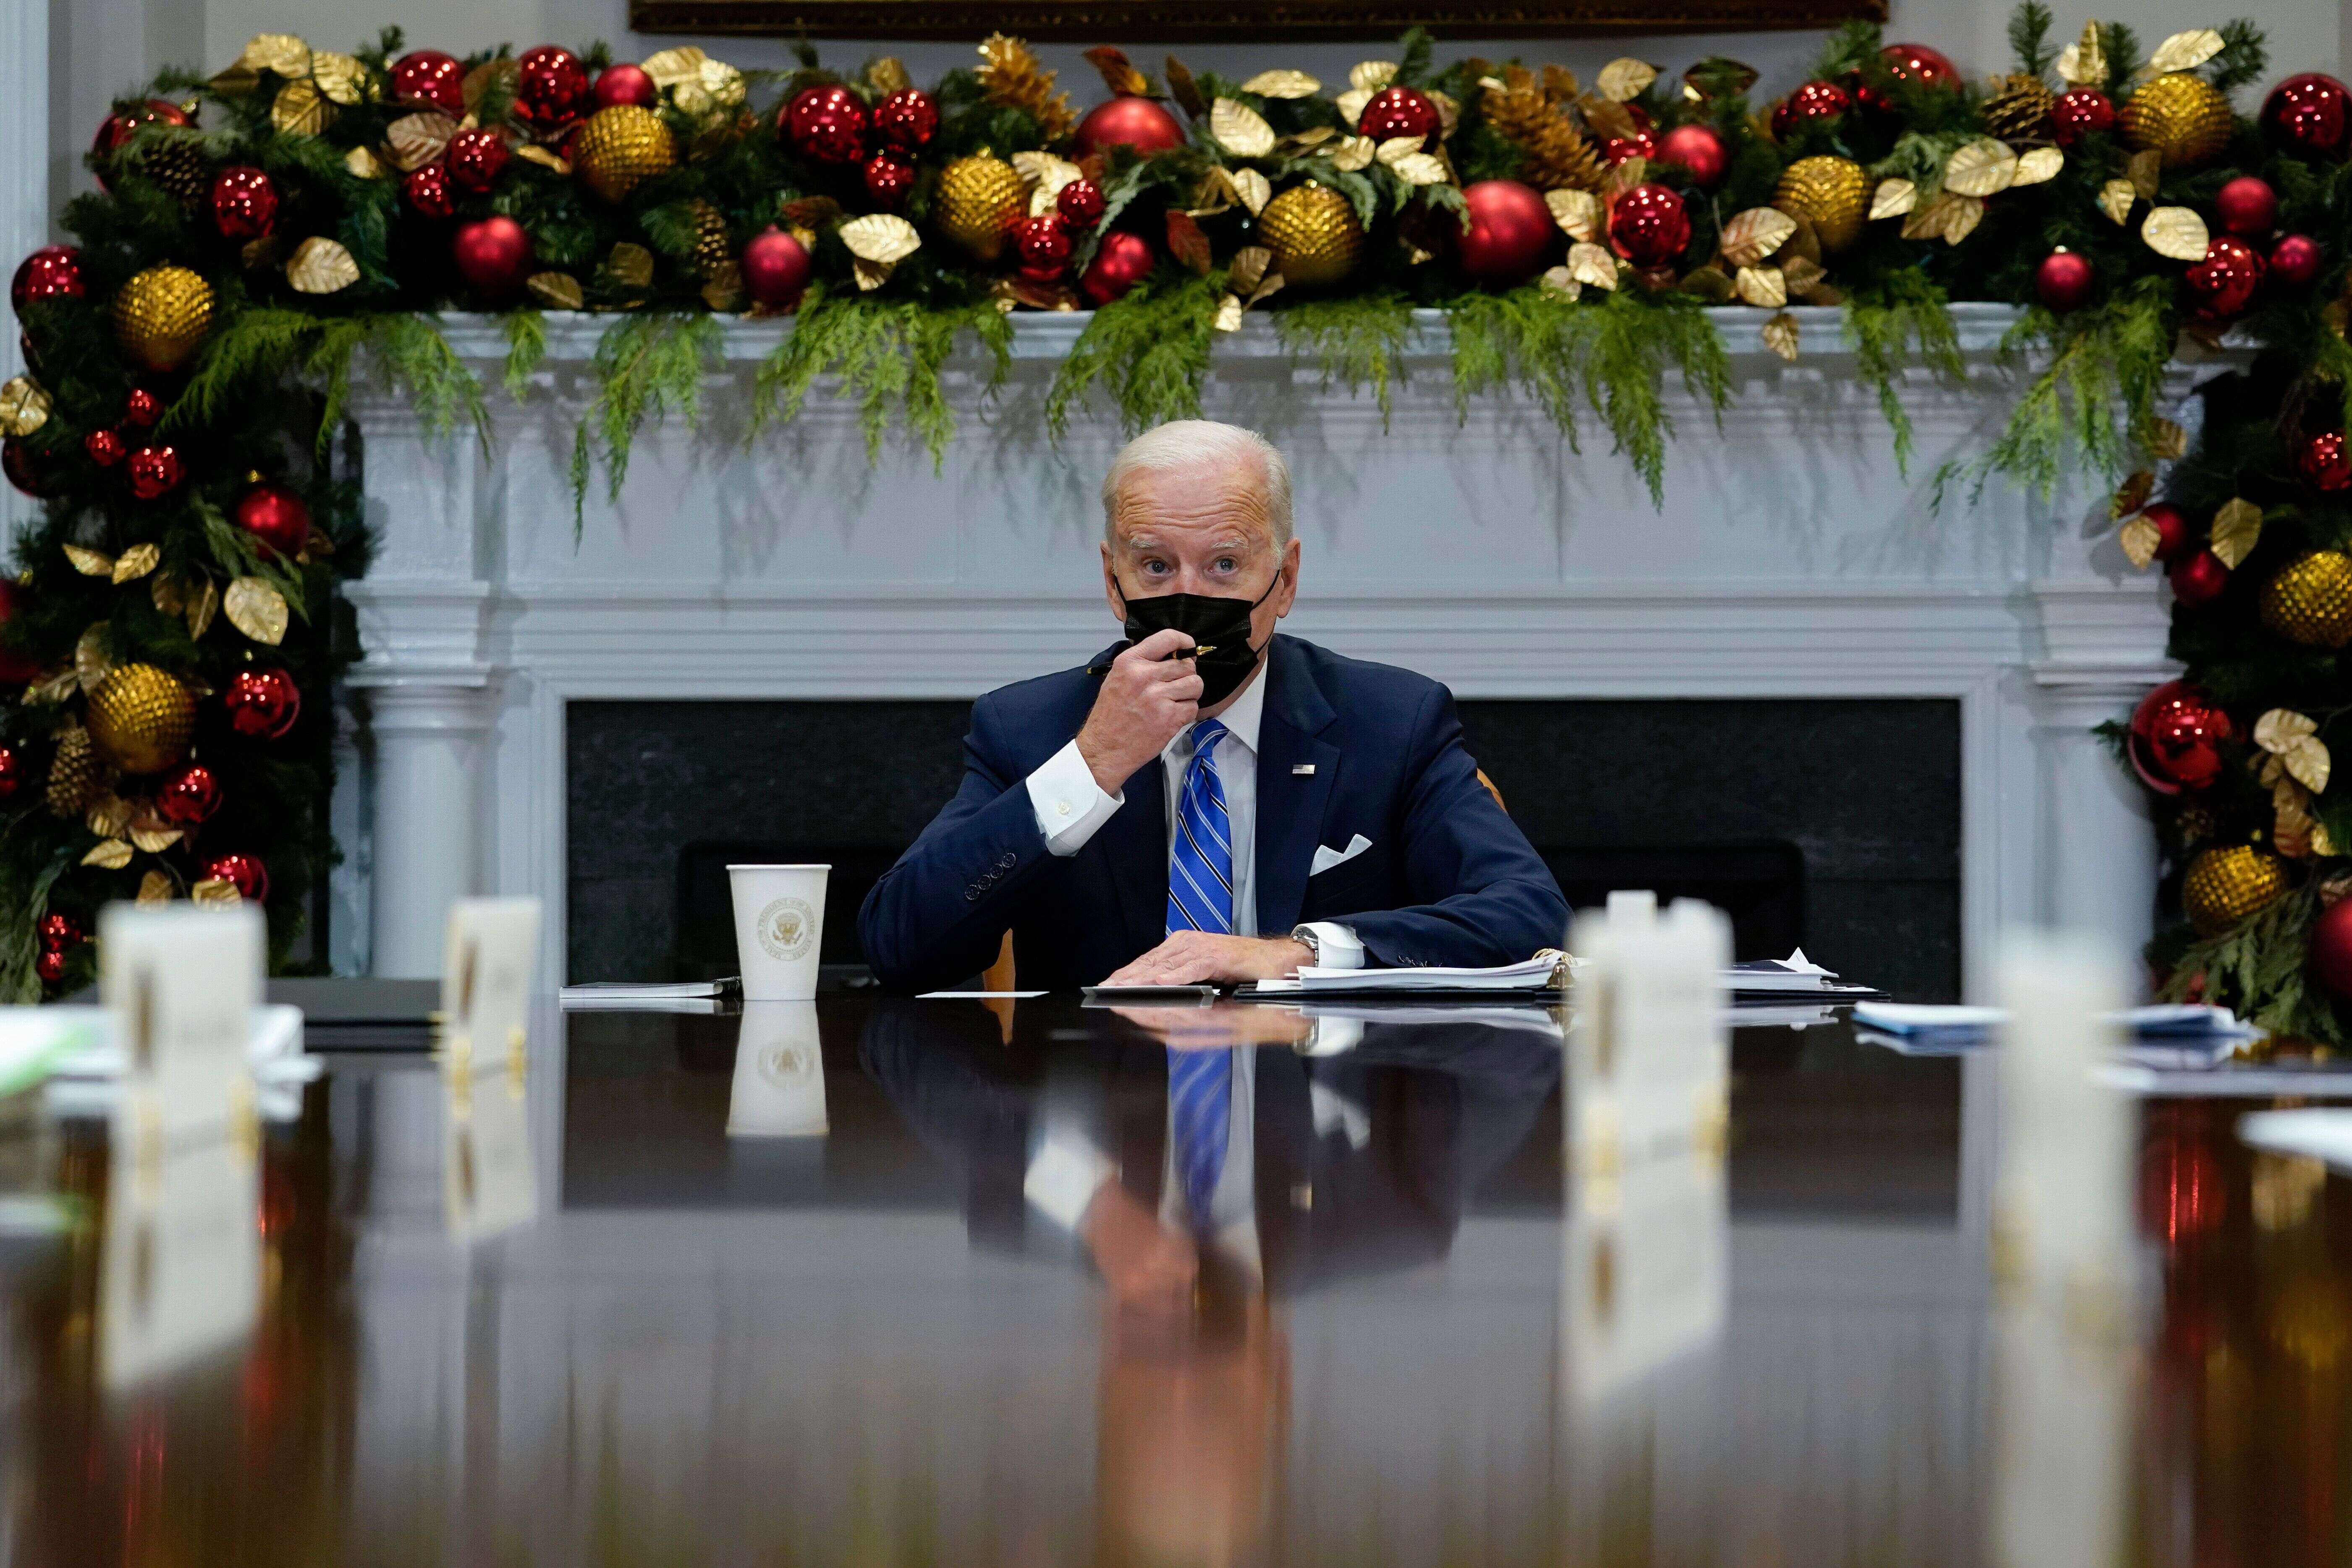 Pourquoi la fin d'année de Joe Biden semble-t-elle catastrophique (alors qu'elle ne l'est pas)? (photo datant du 16 décembre 2021)